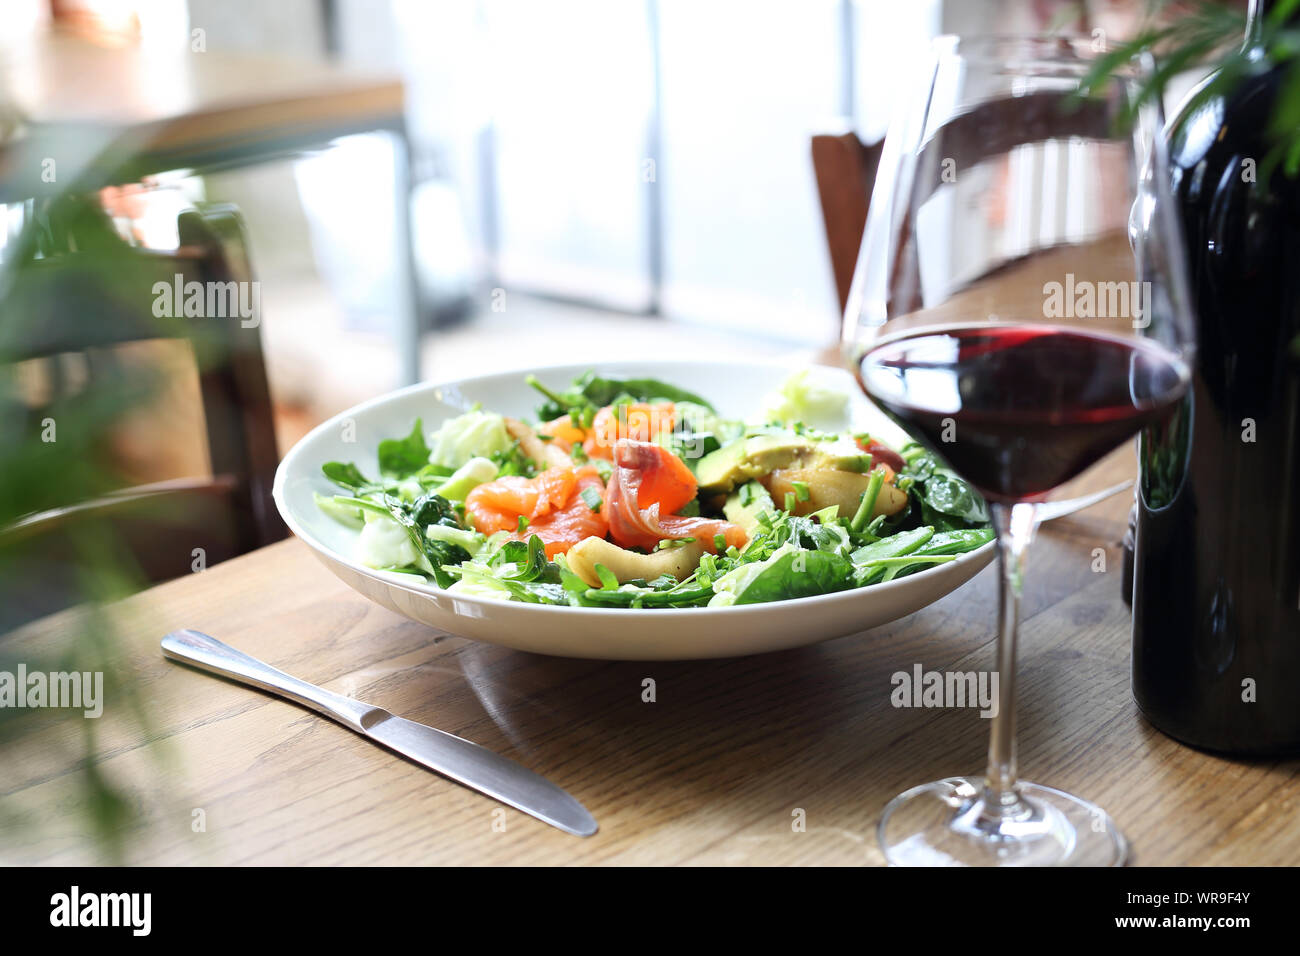 Leichten Salat aus Spinat und Rucola Blätter mit Lachs, Avocado und Birne. Stockfoto